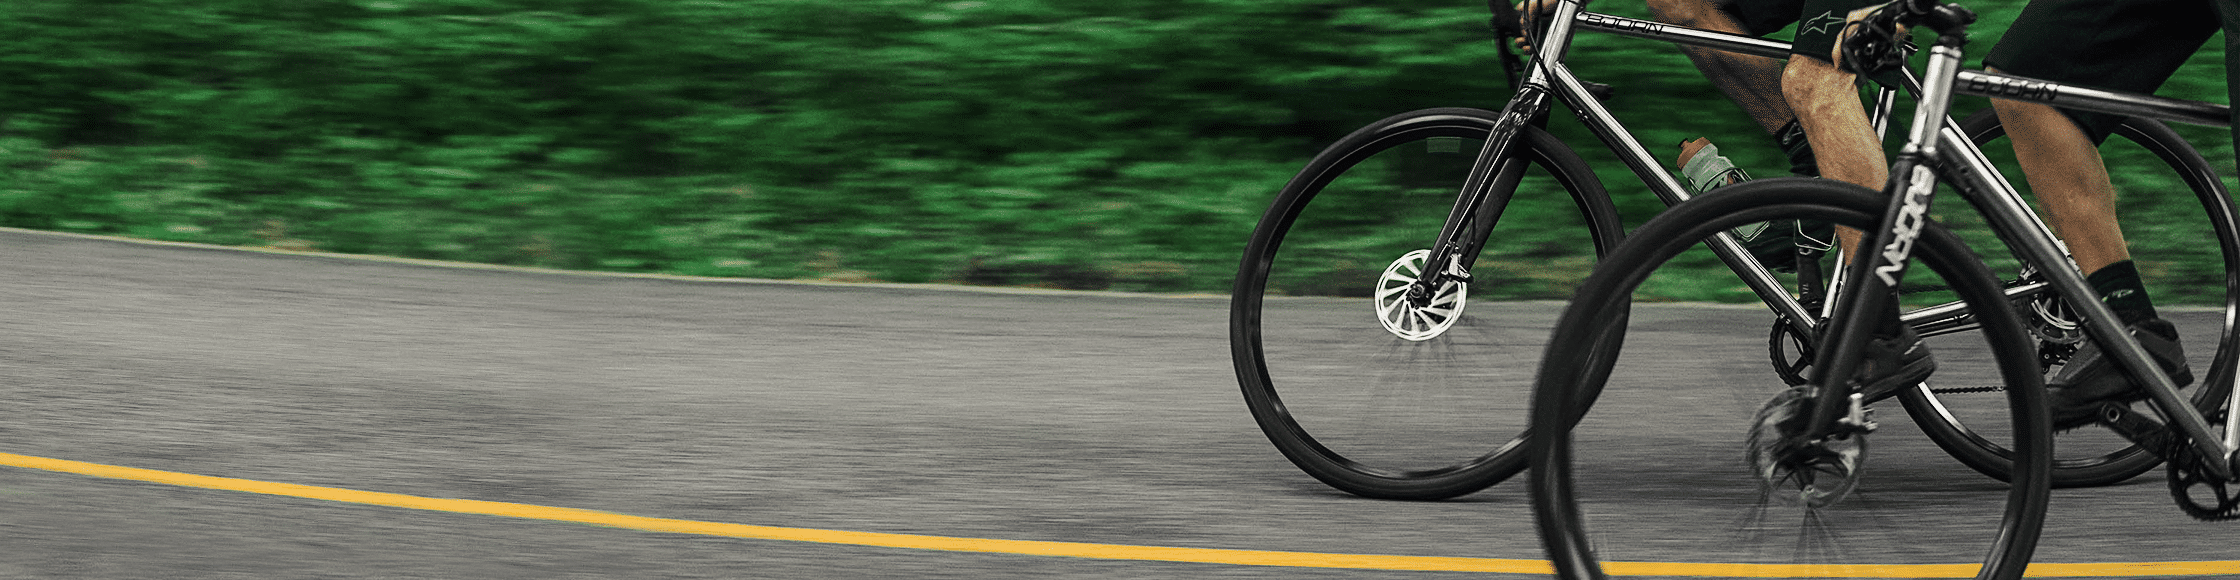 Bjorn Bikes nachhaltige Fahrräder aus recyceltem Edelstahl